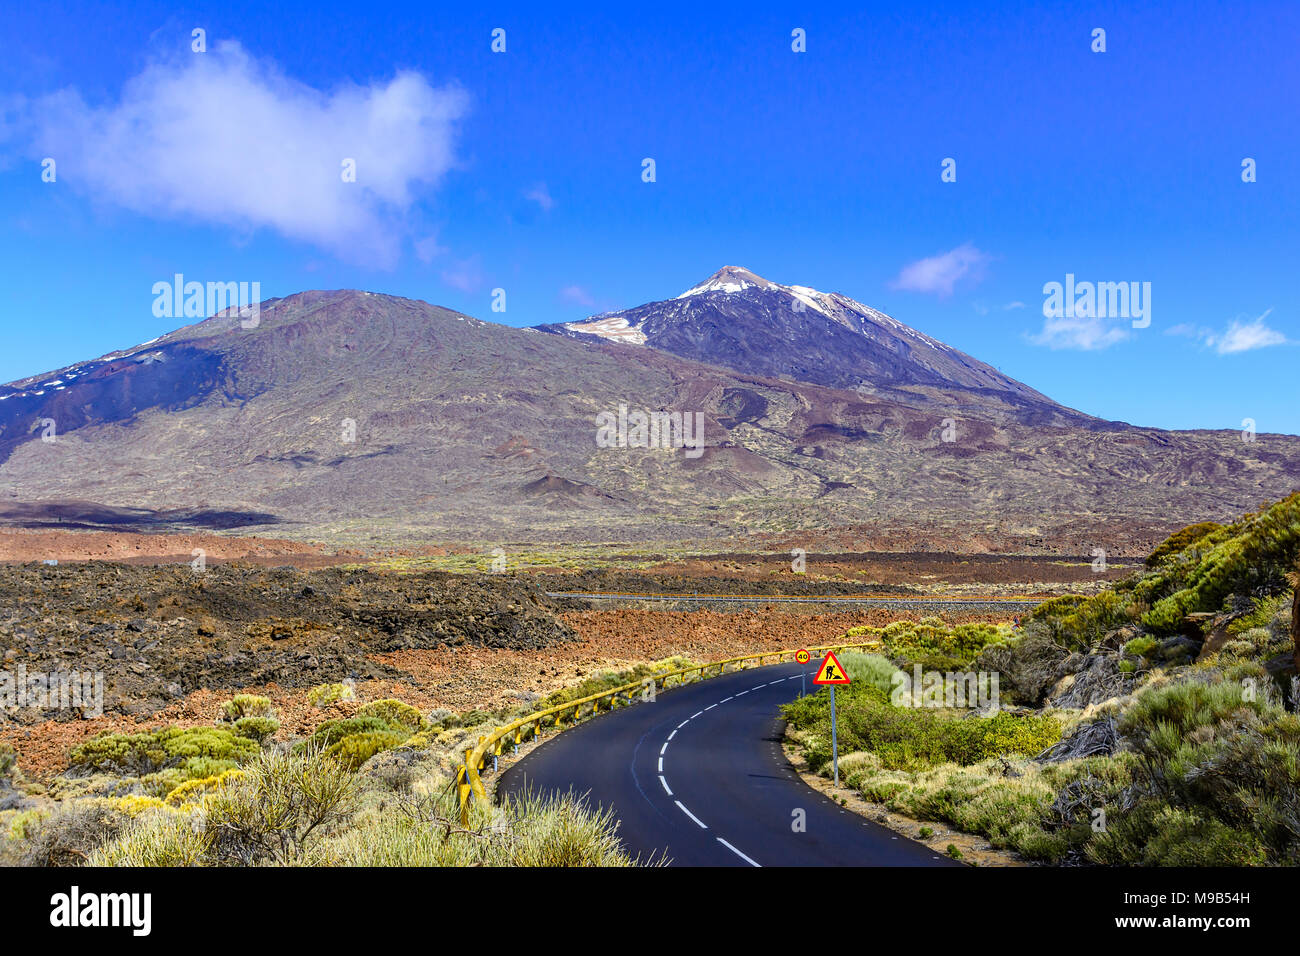 Nationalpark Teide, Teneriffa, Kanarische Inseln, Spanien - Straße führen. Stockfoto